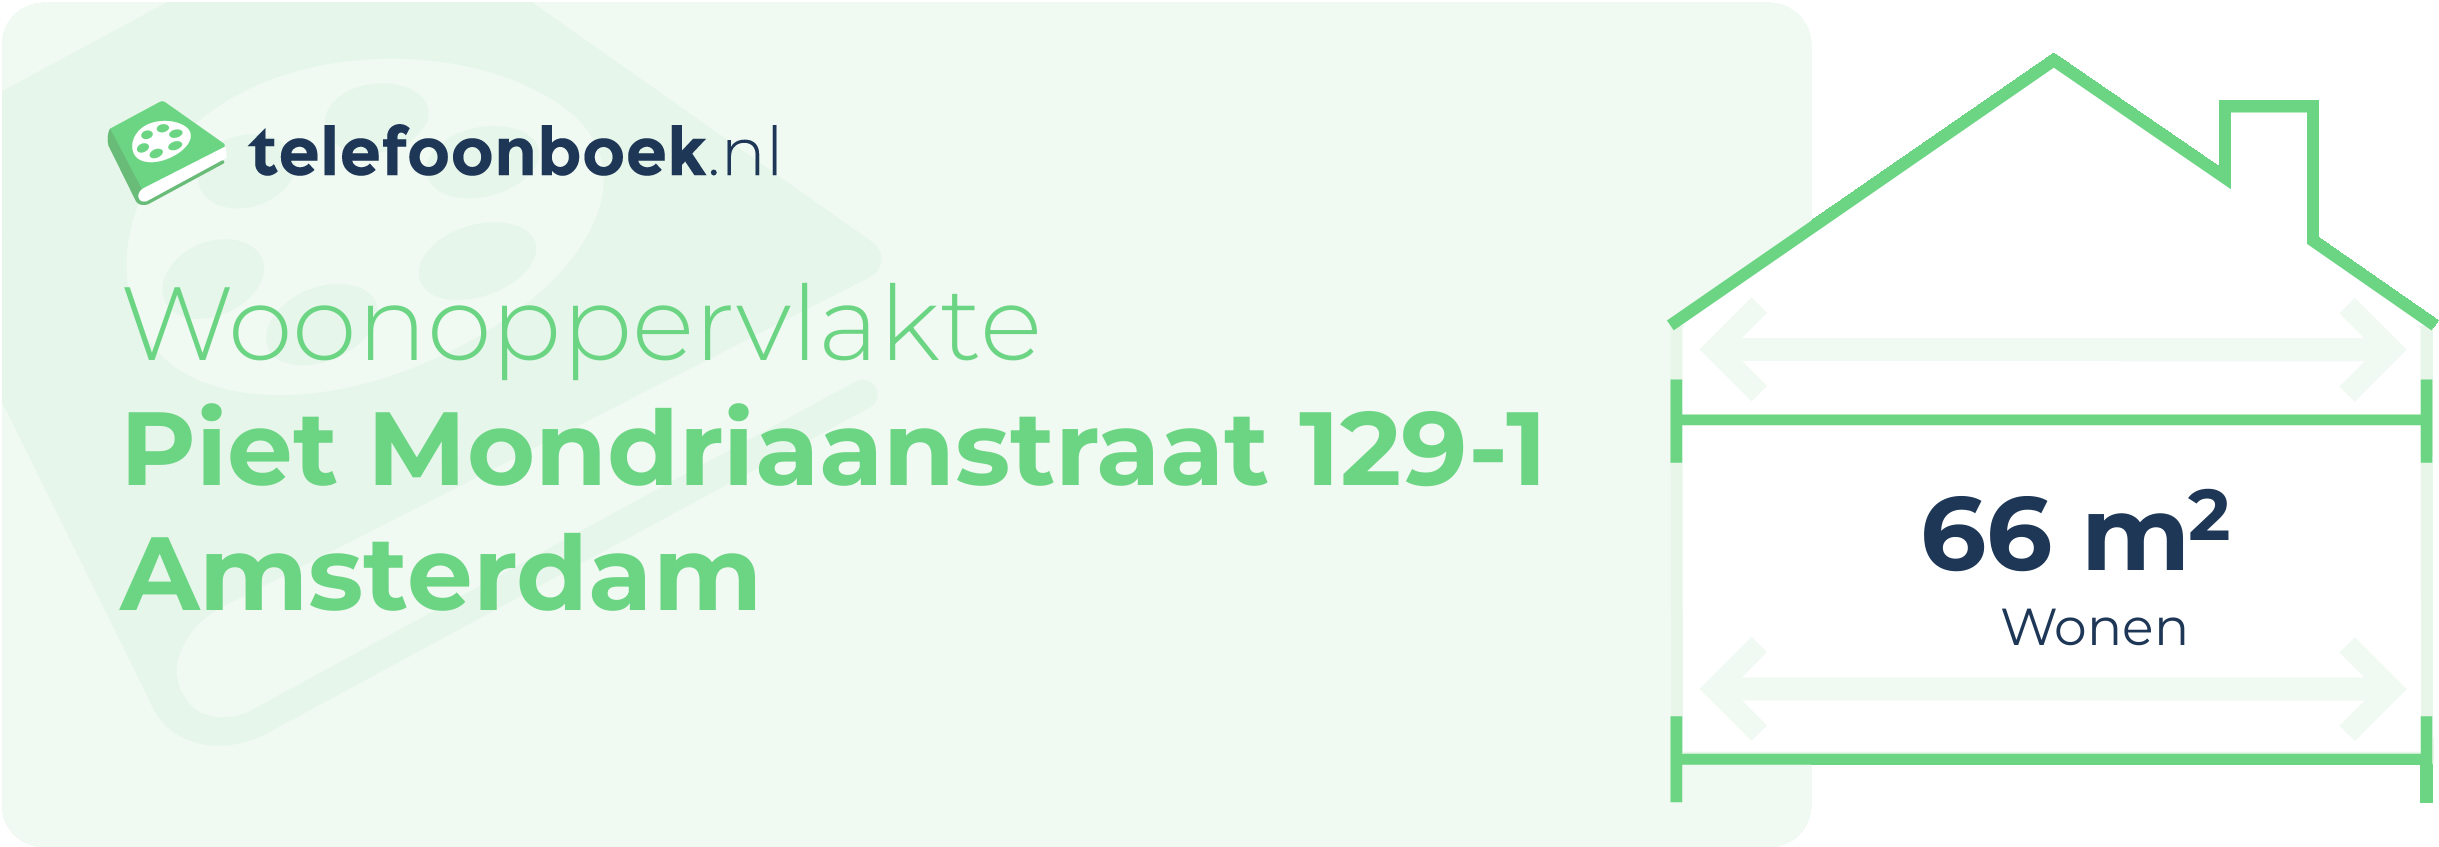 Woonoppervlakte Piet Mondriaanstraat 129-1 Amsterdam